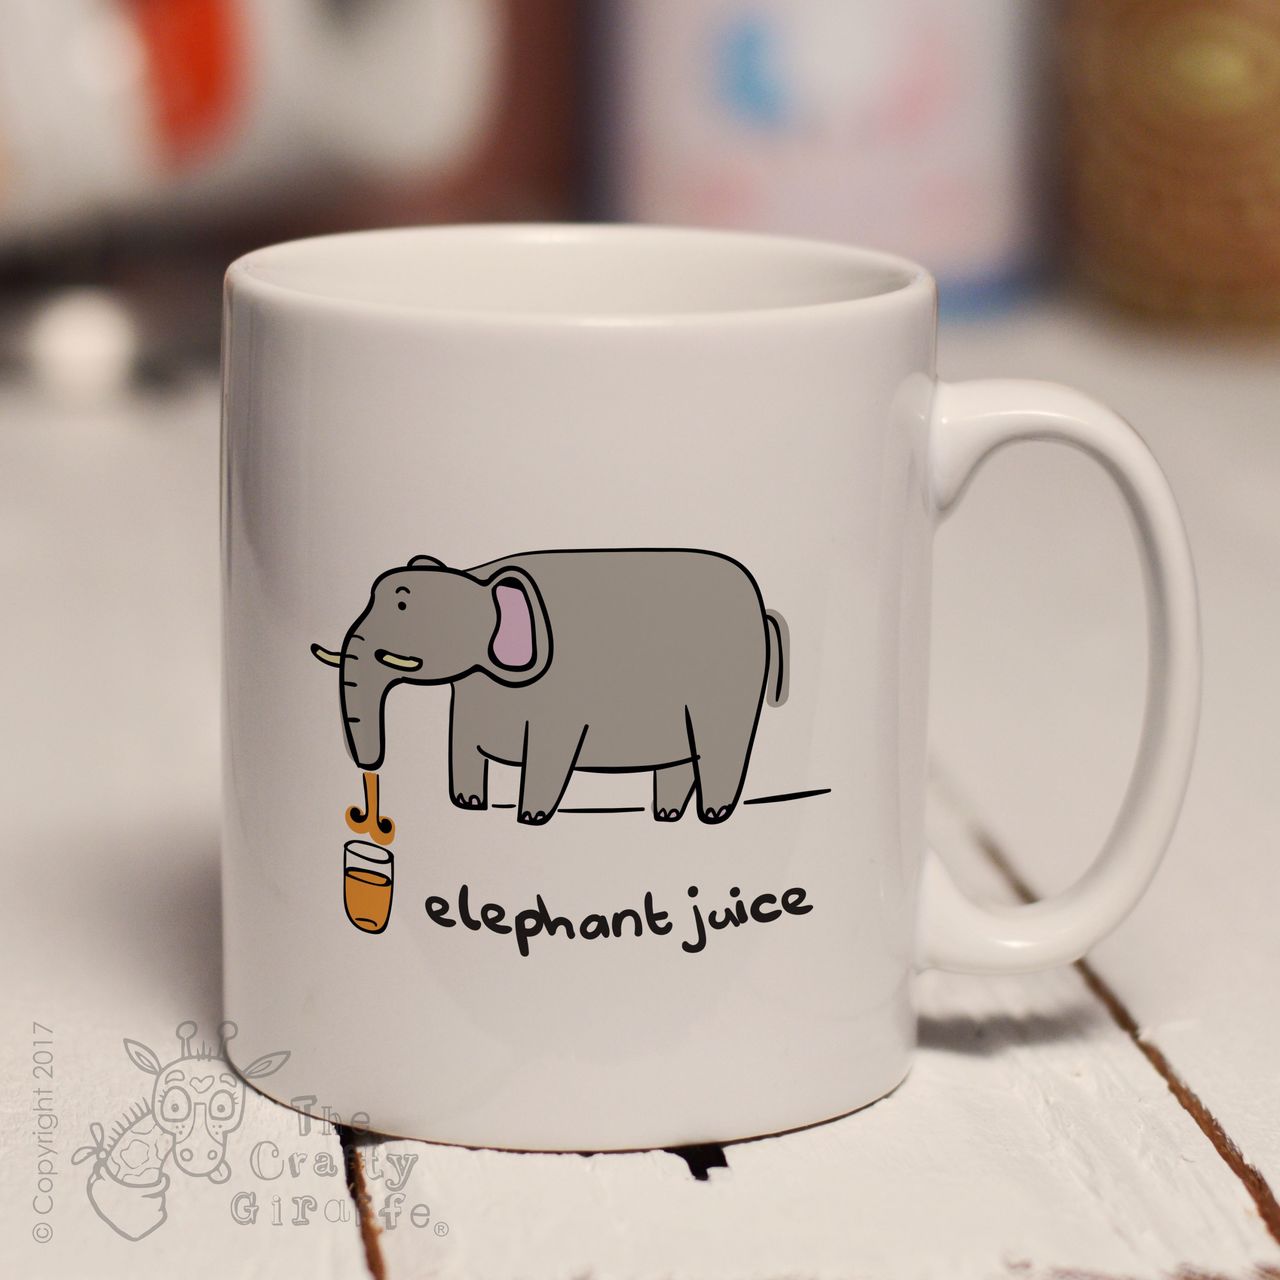 Elephant juice mug